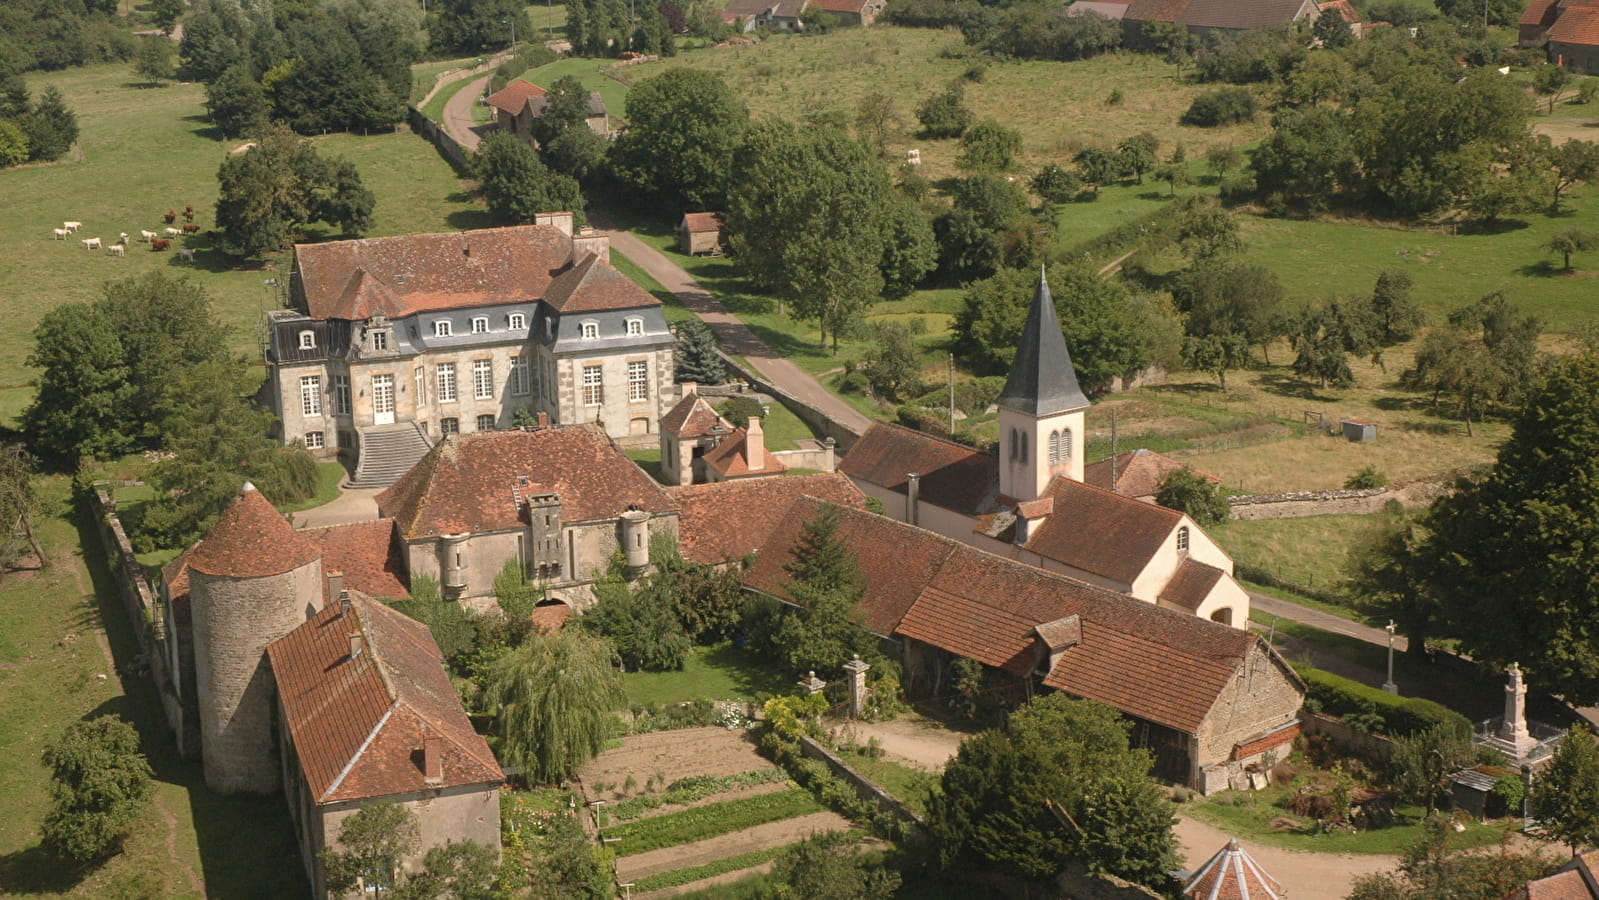 Château de Flée - Monument historique classé